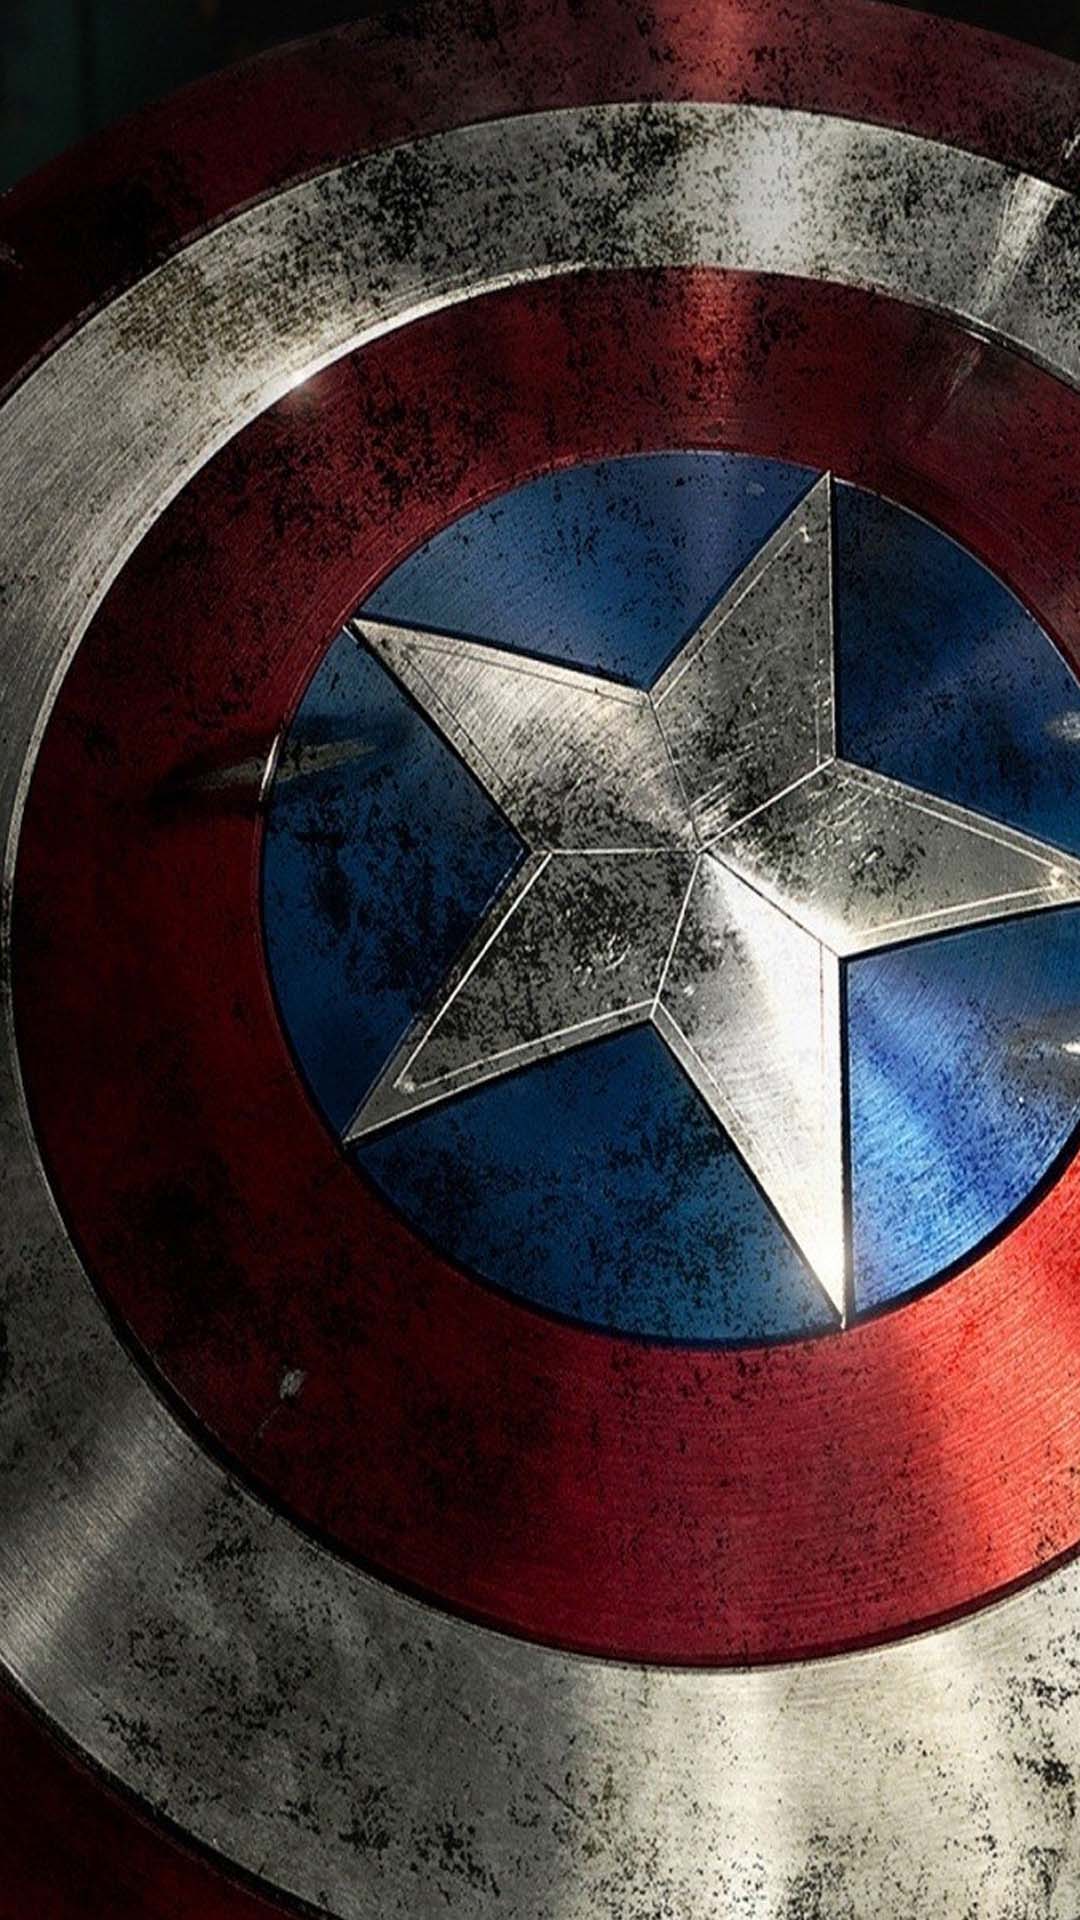 Wallpaper Captain America Shield